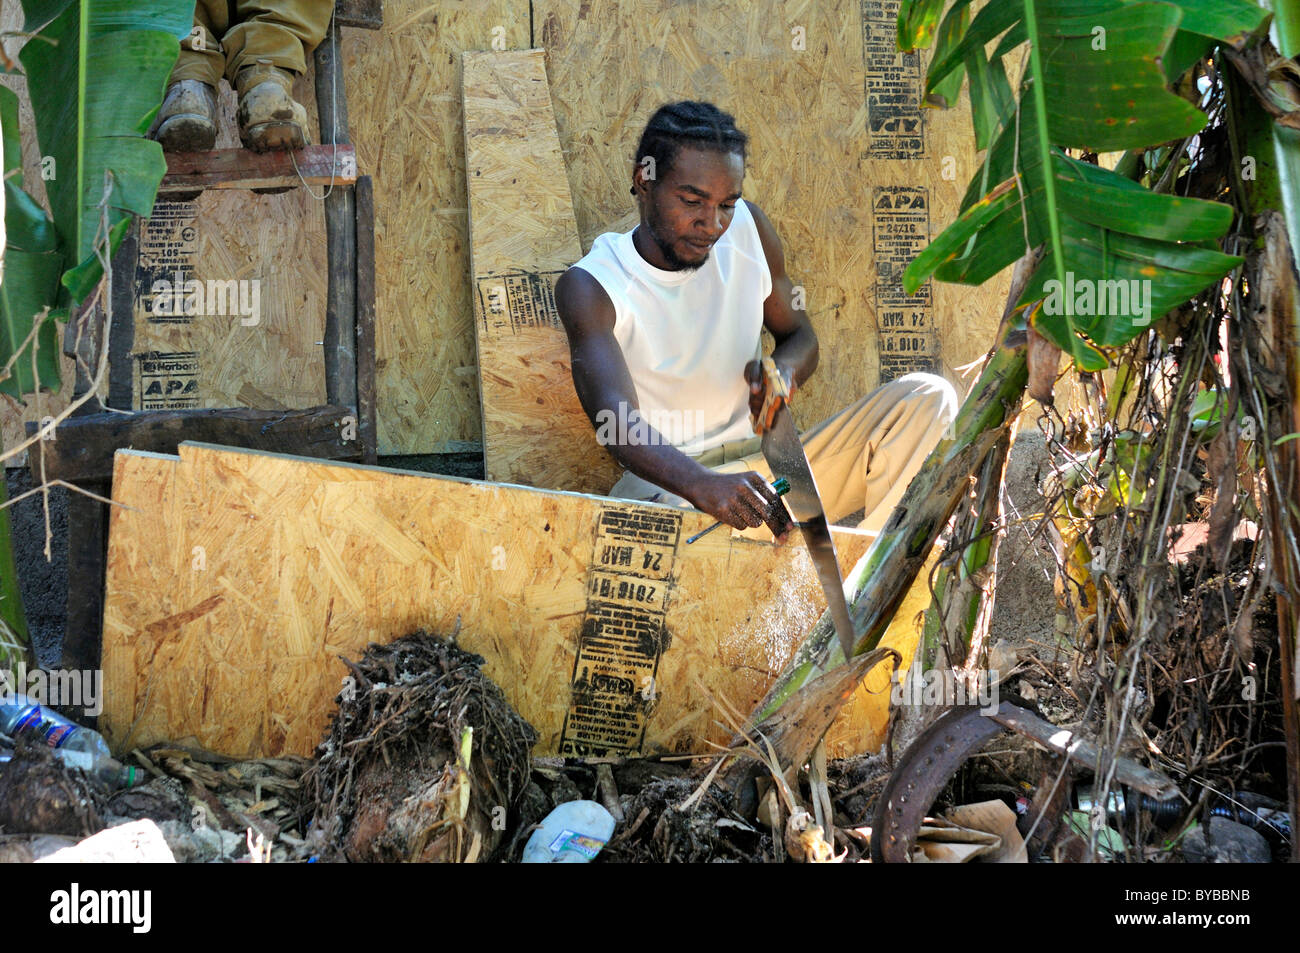 Bau von erdbebensicheren Fertighäusern, Einwohner von einem Slumviertel von einer Hilfsorganisation zur Verfügung gestellt, Haiti Stockfoto